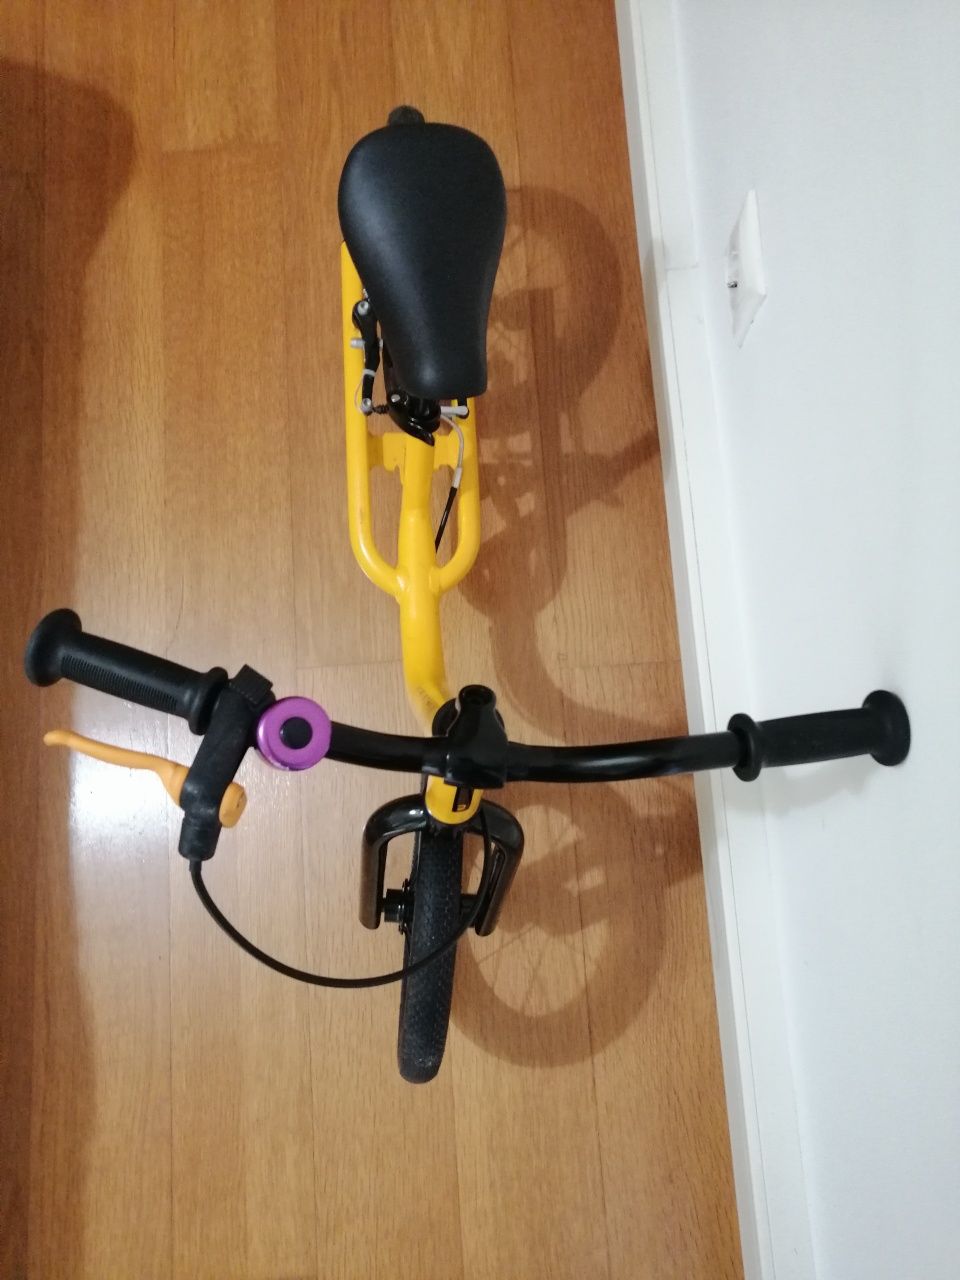 Bicicleta criança B'twin roda 12 (capacete+campainha)